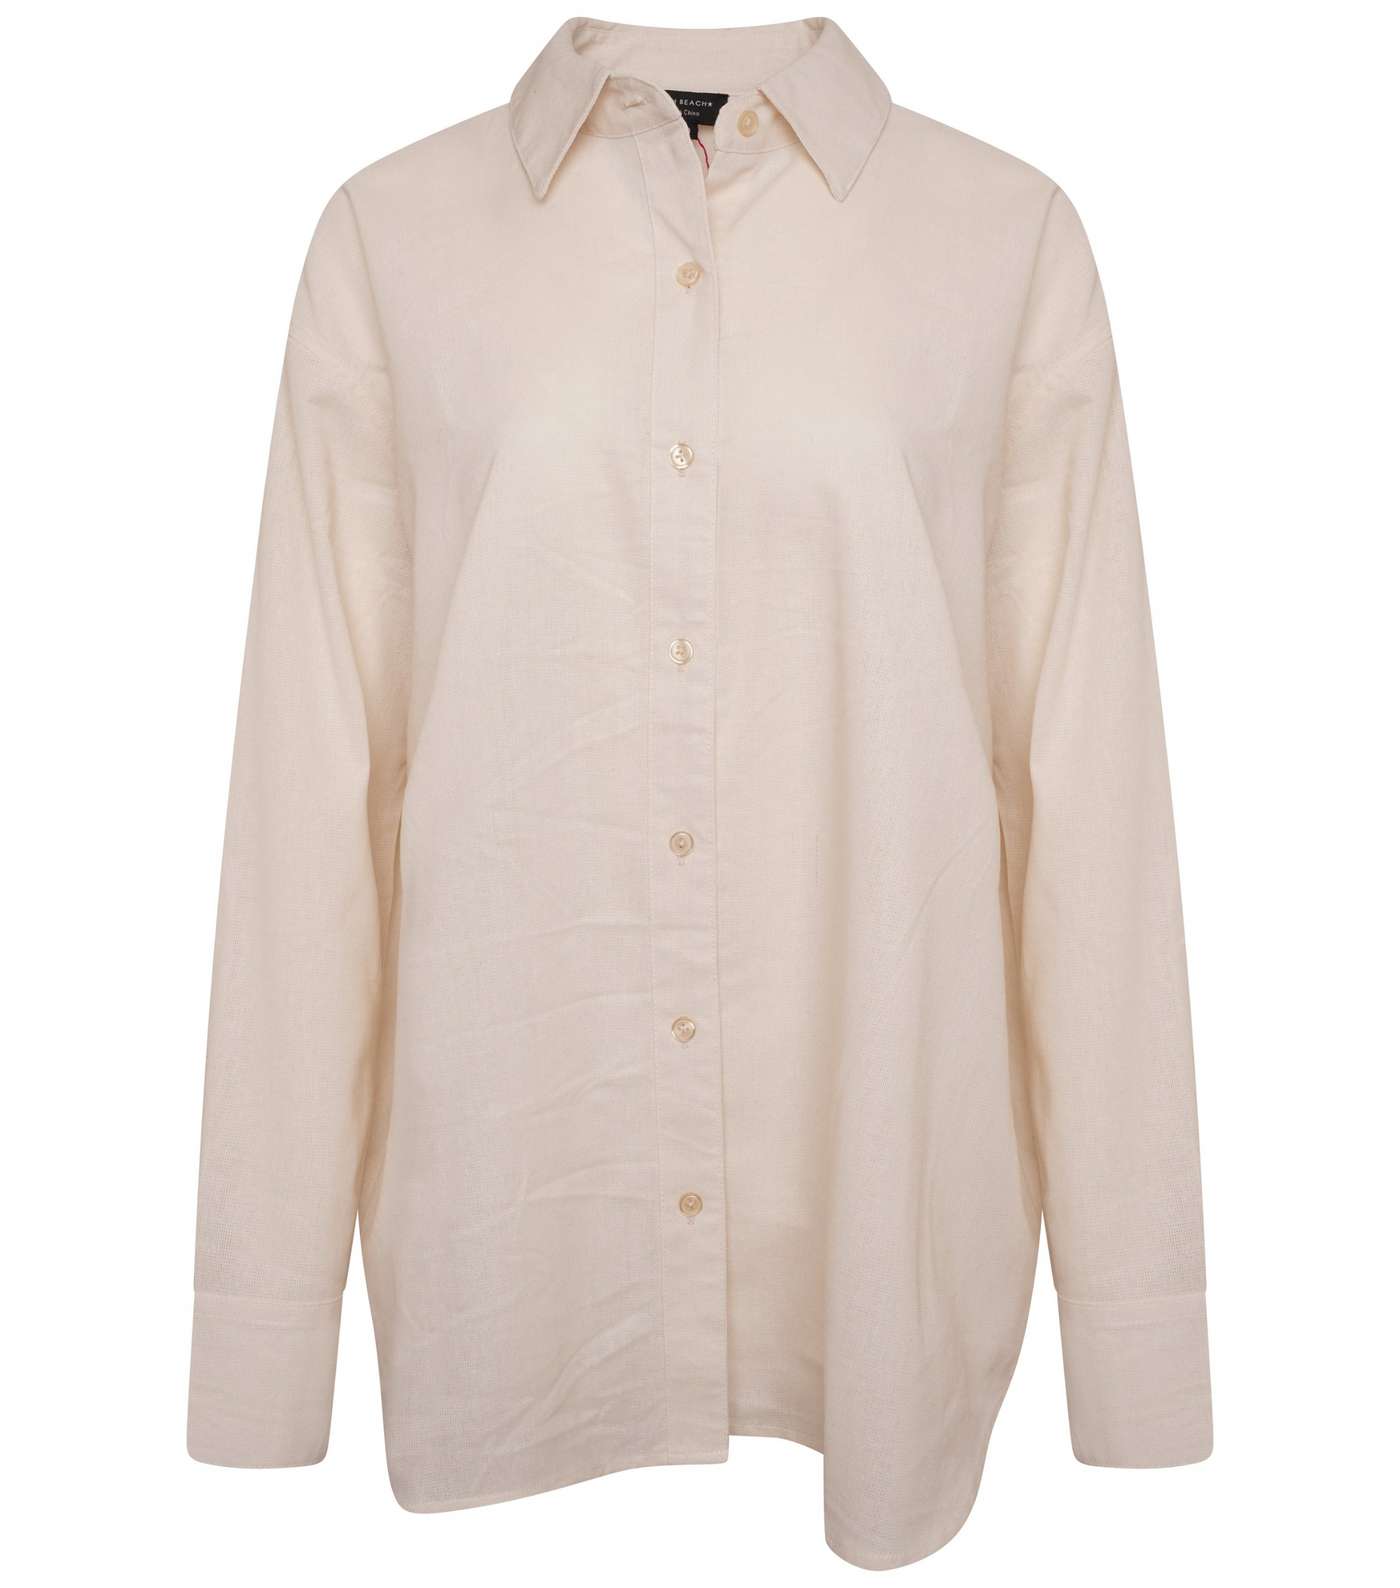 South Beach Cream Linen-Look Oversized Shirt Image 4